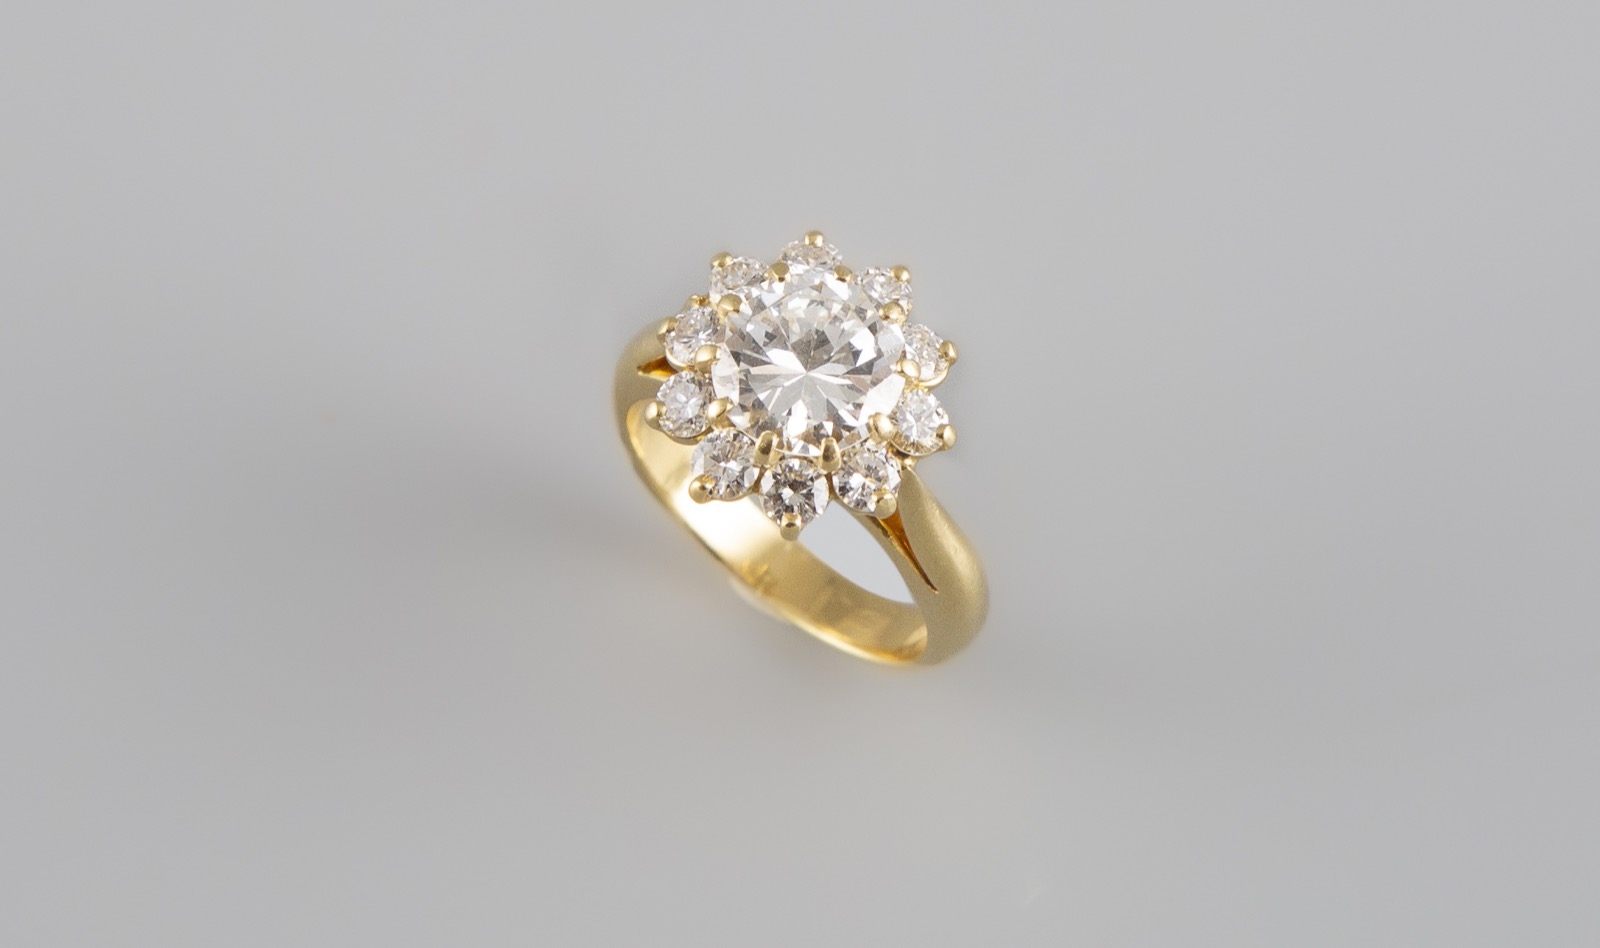 Lot 116 : Bague pompadour en or jaune sertie au centre d'un diamant demi taille pesant environ 2,10 carats ceinturé d'environ 1 carat de diamant taille brillant. Poids brut 7,45g. Adjugé : 4200€